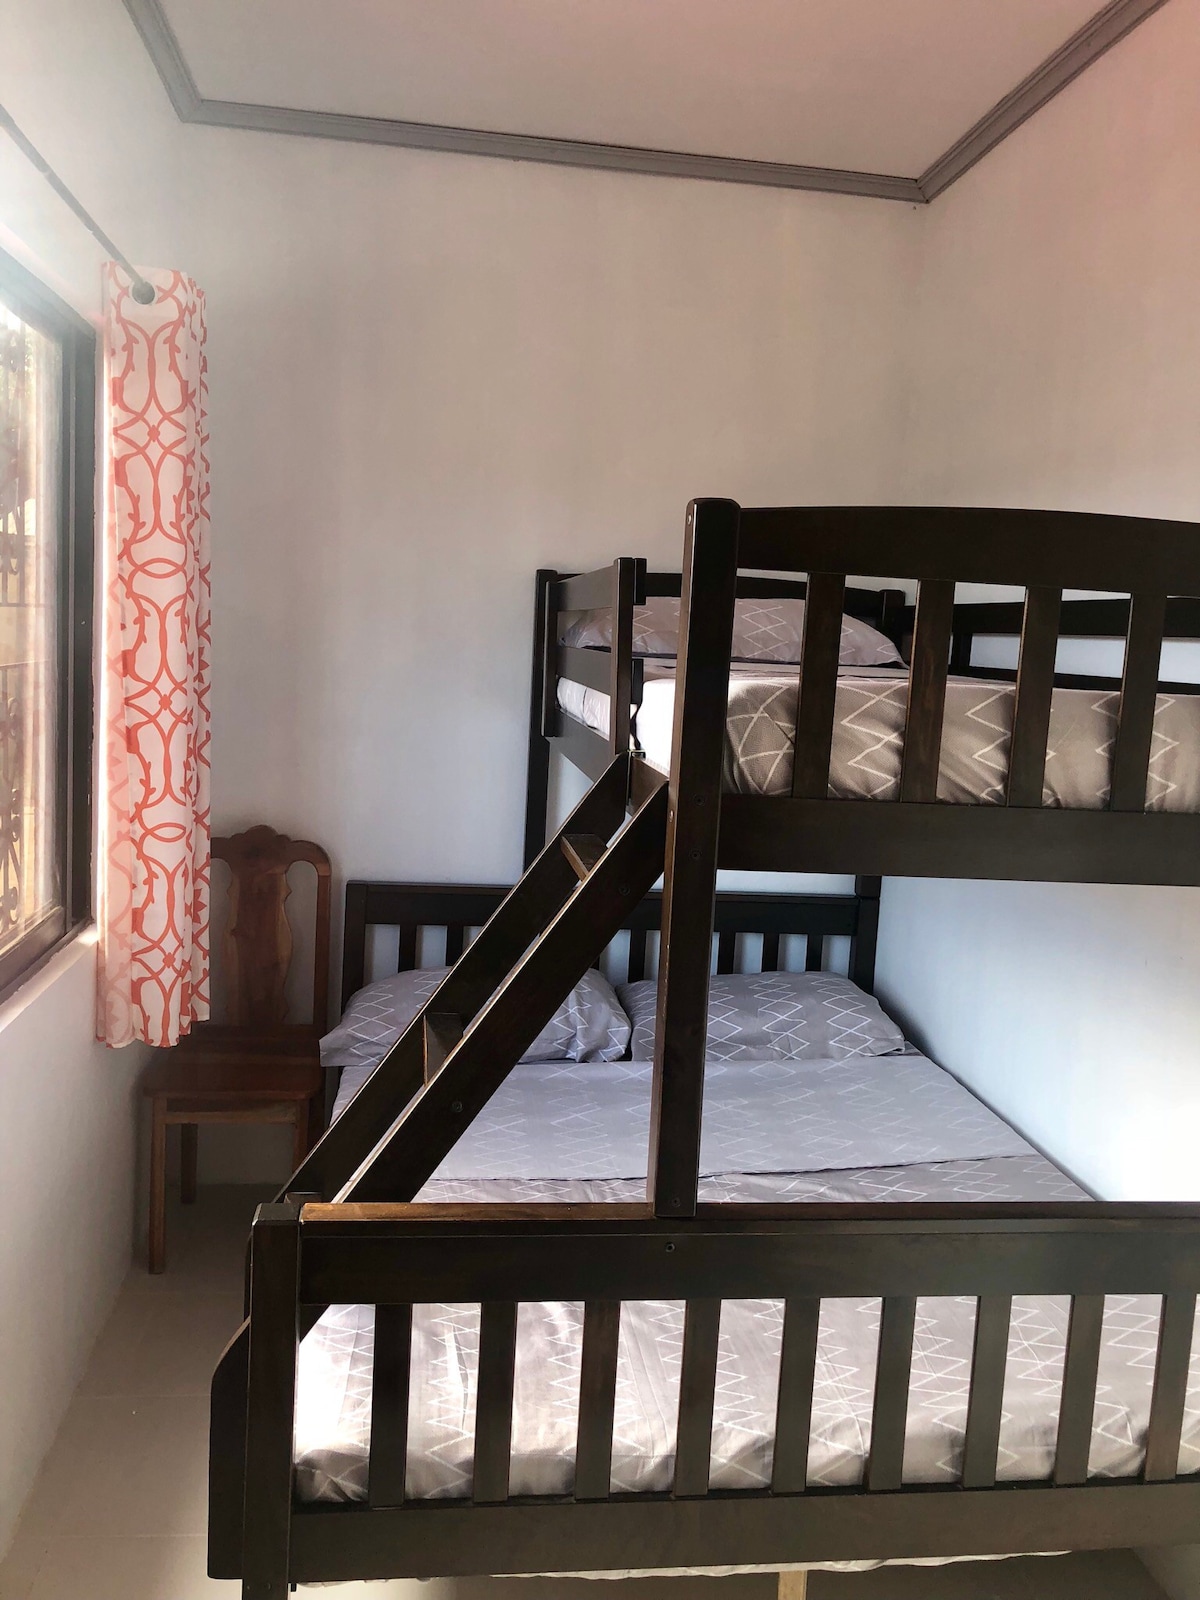 3 bedroom, 3 baths in Puerto Princesa Palawan